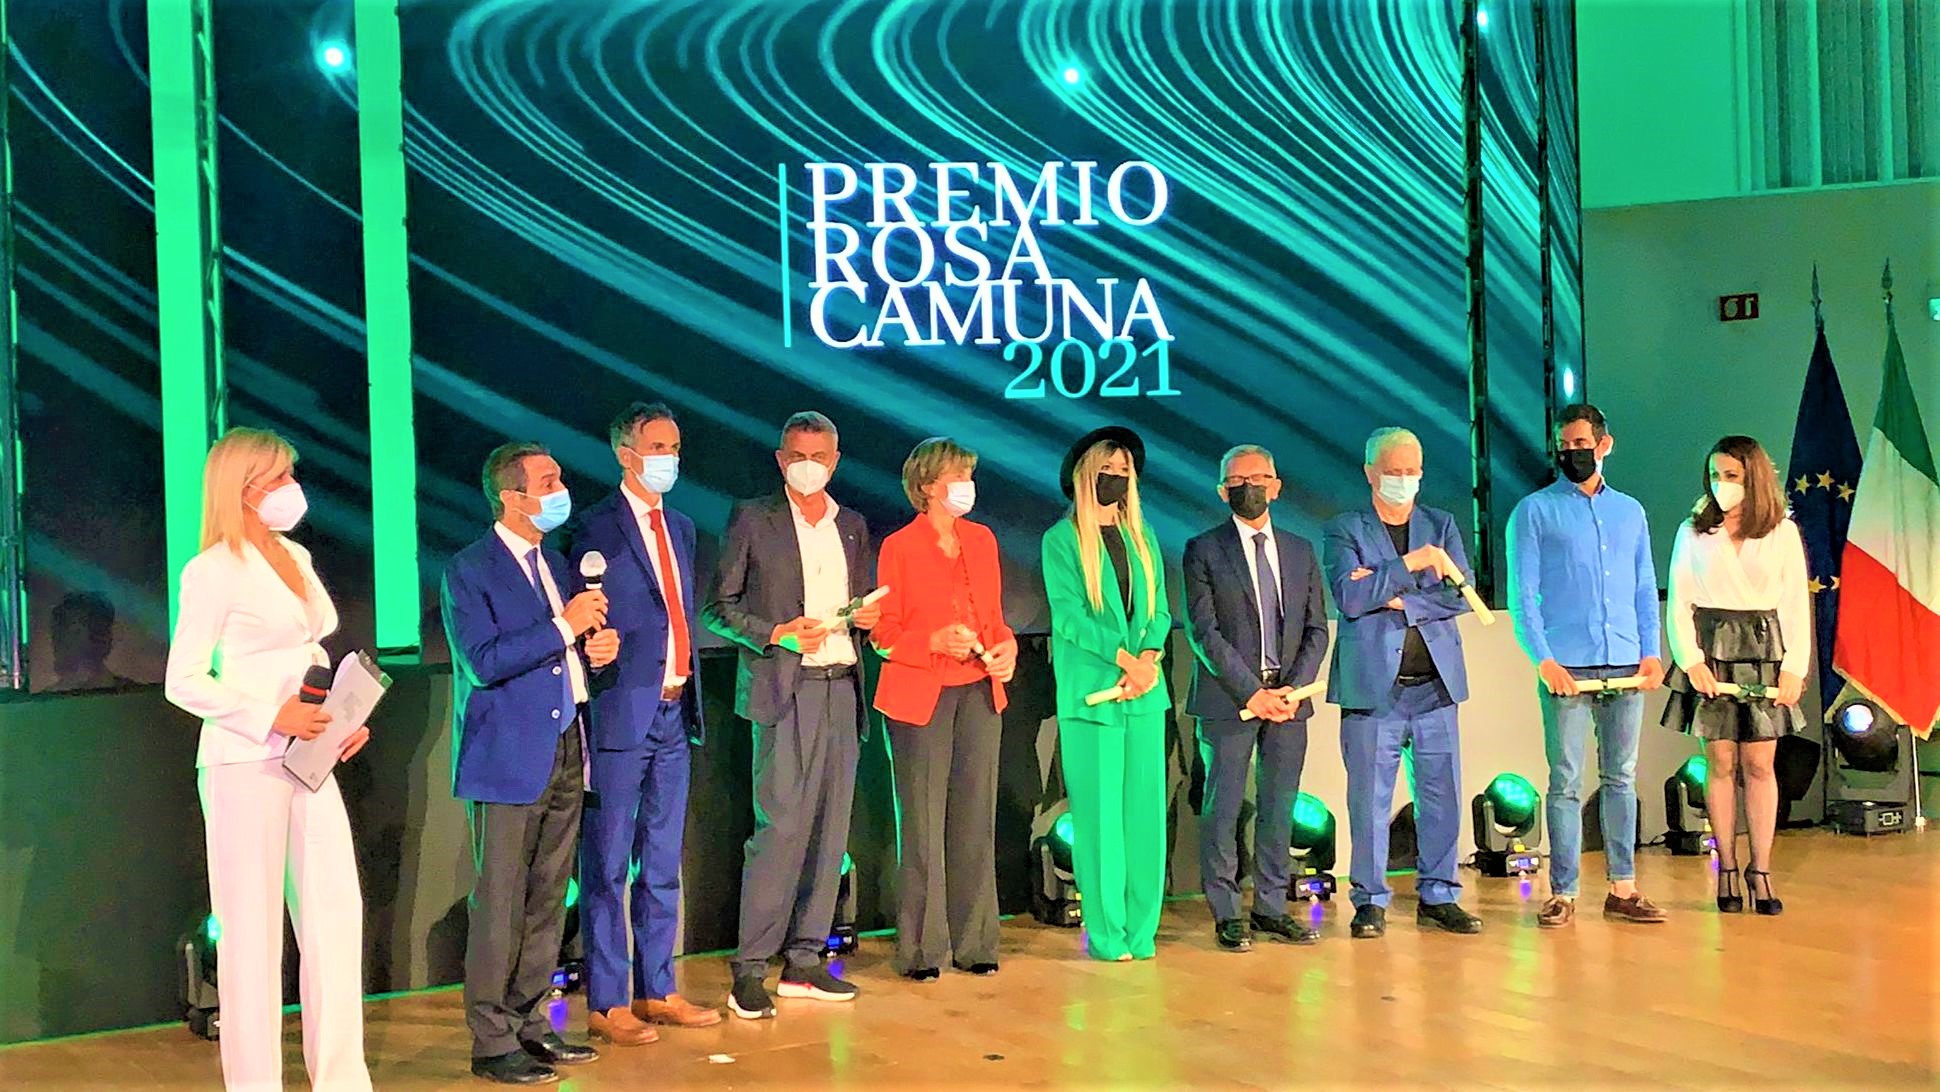 Menzione speciale "Rosa Camuna" Regione Lombardia per Enrico Dalceri, la Mabilia dei Legnanesi